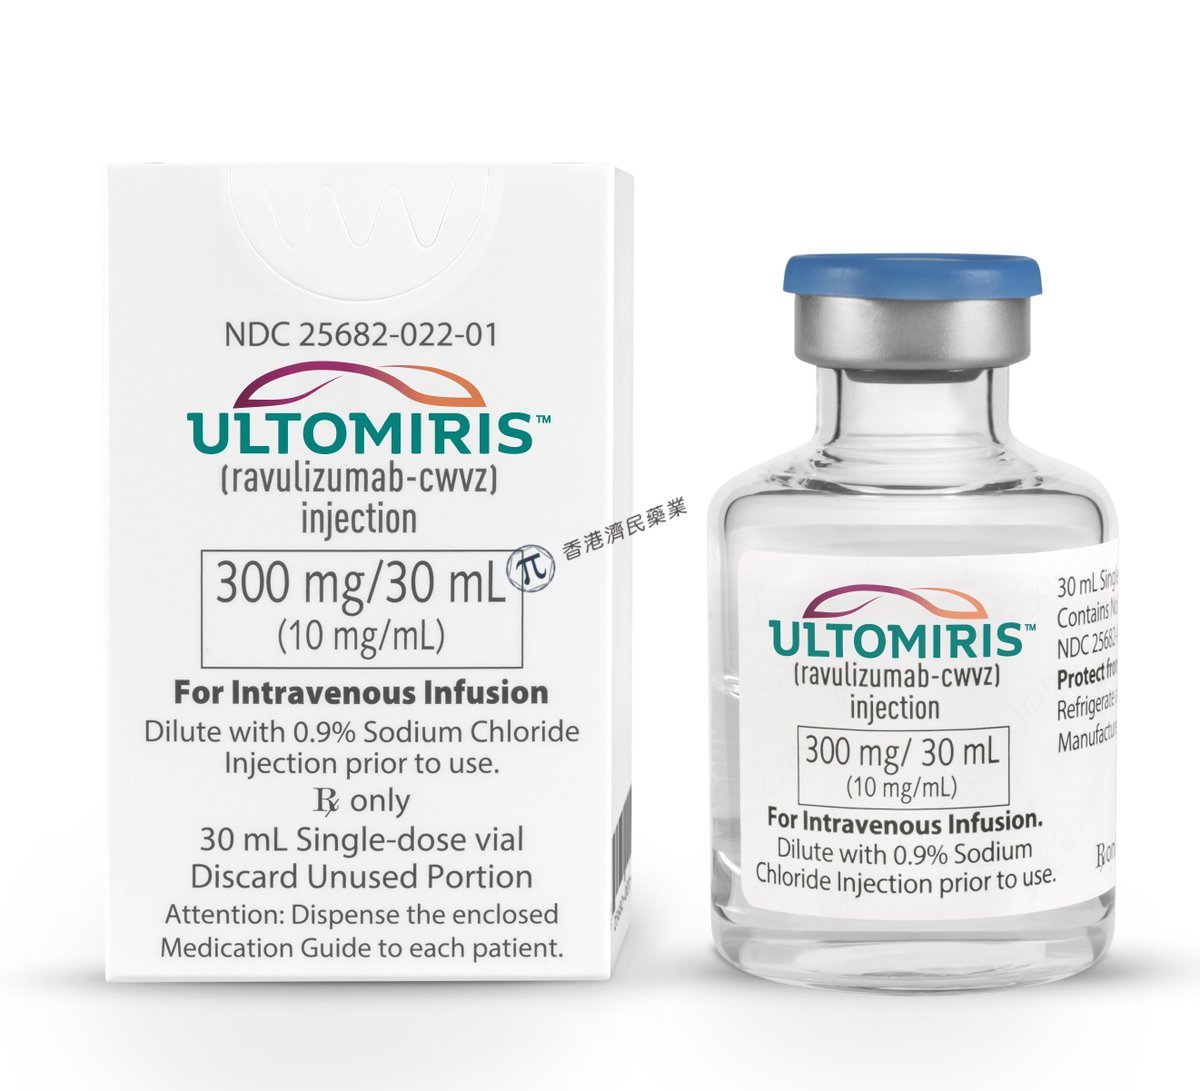 欧盟批准Ultomiris（ravulizumab）治疗儿童&青少年阵发性夜间血红蛋白尿(PNH)_香港济民药业